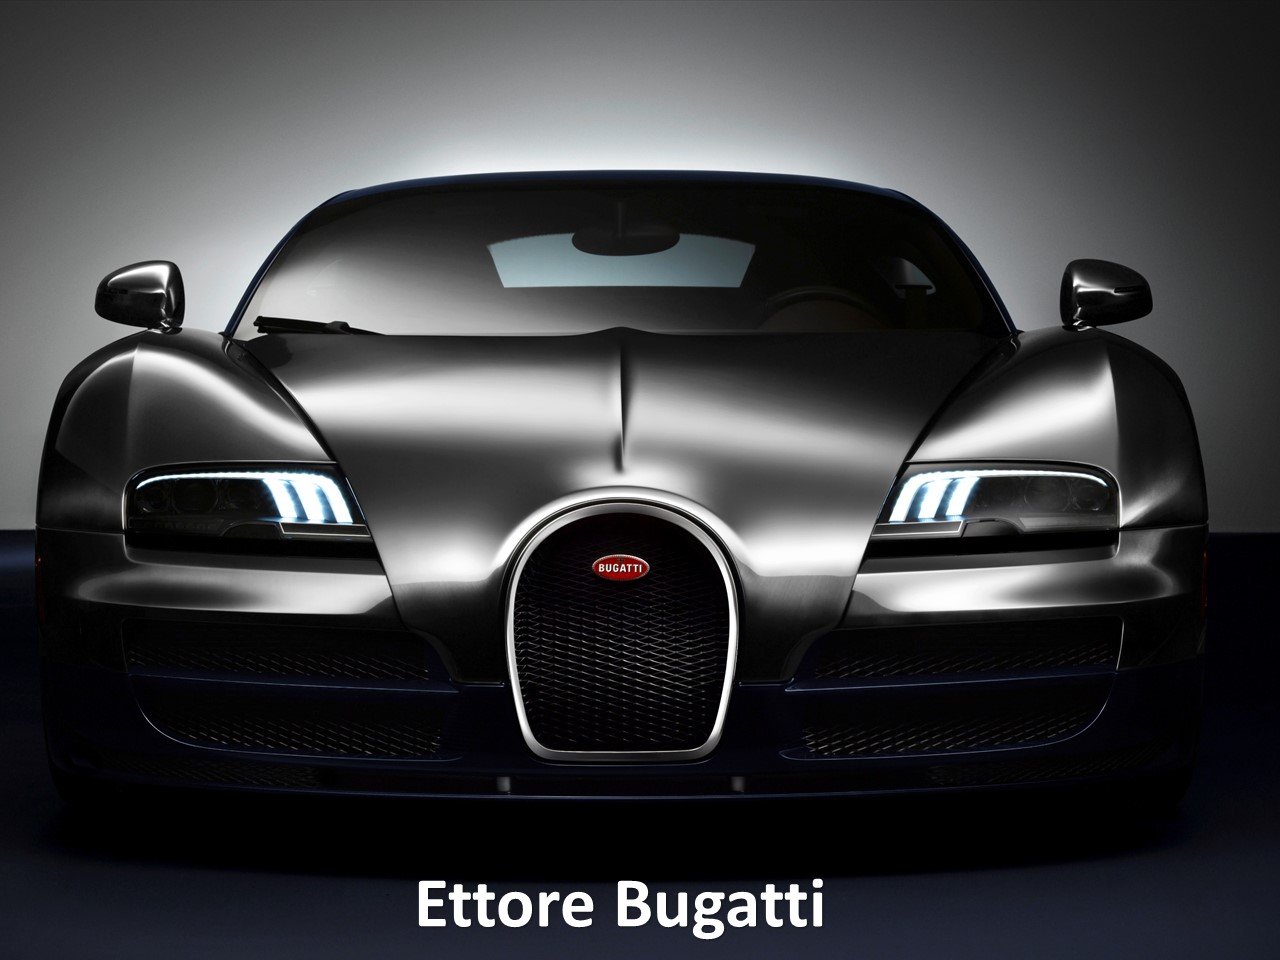 Les Légendes de Bugatti”: Ettore